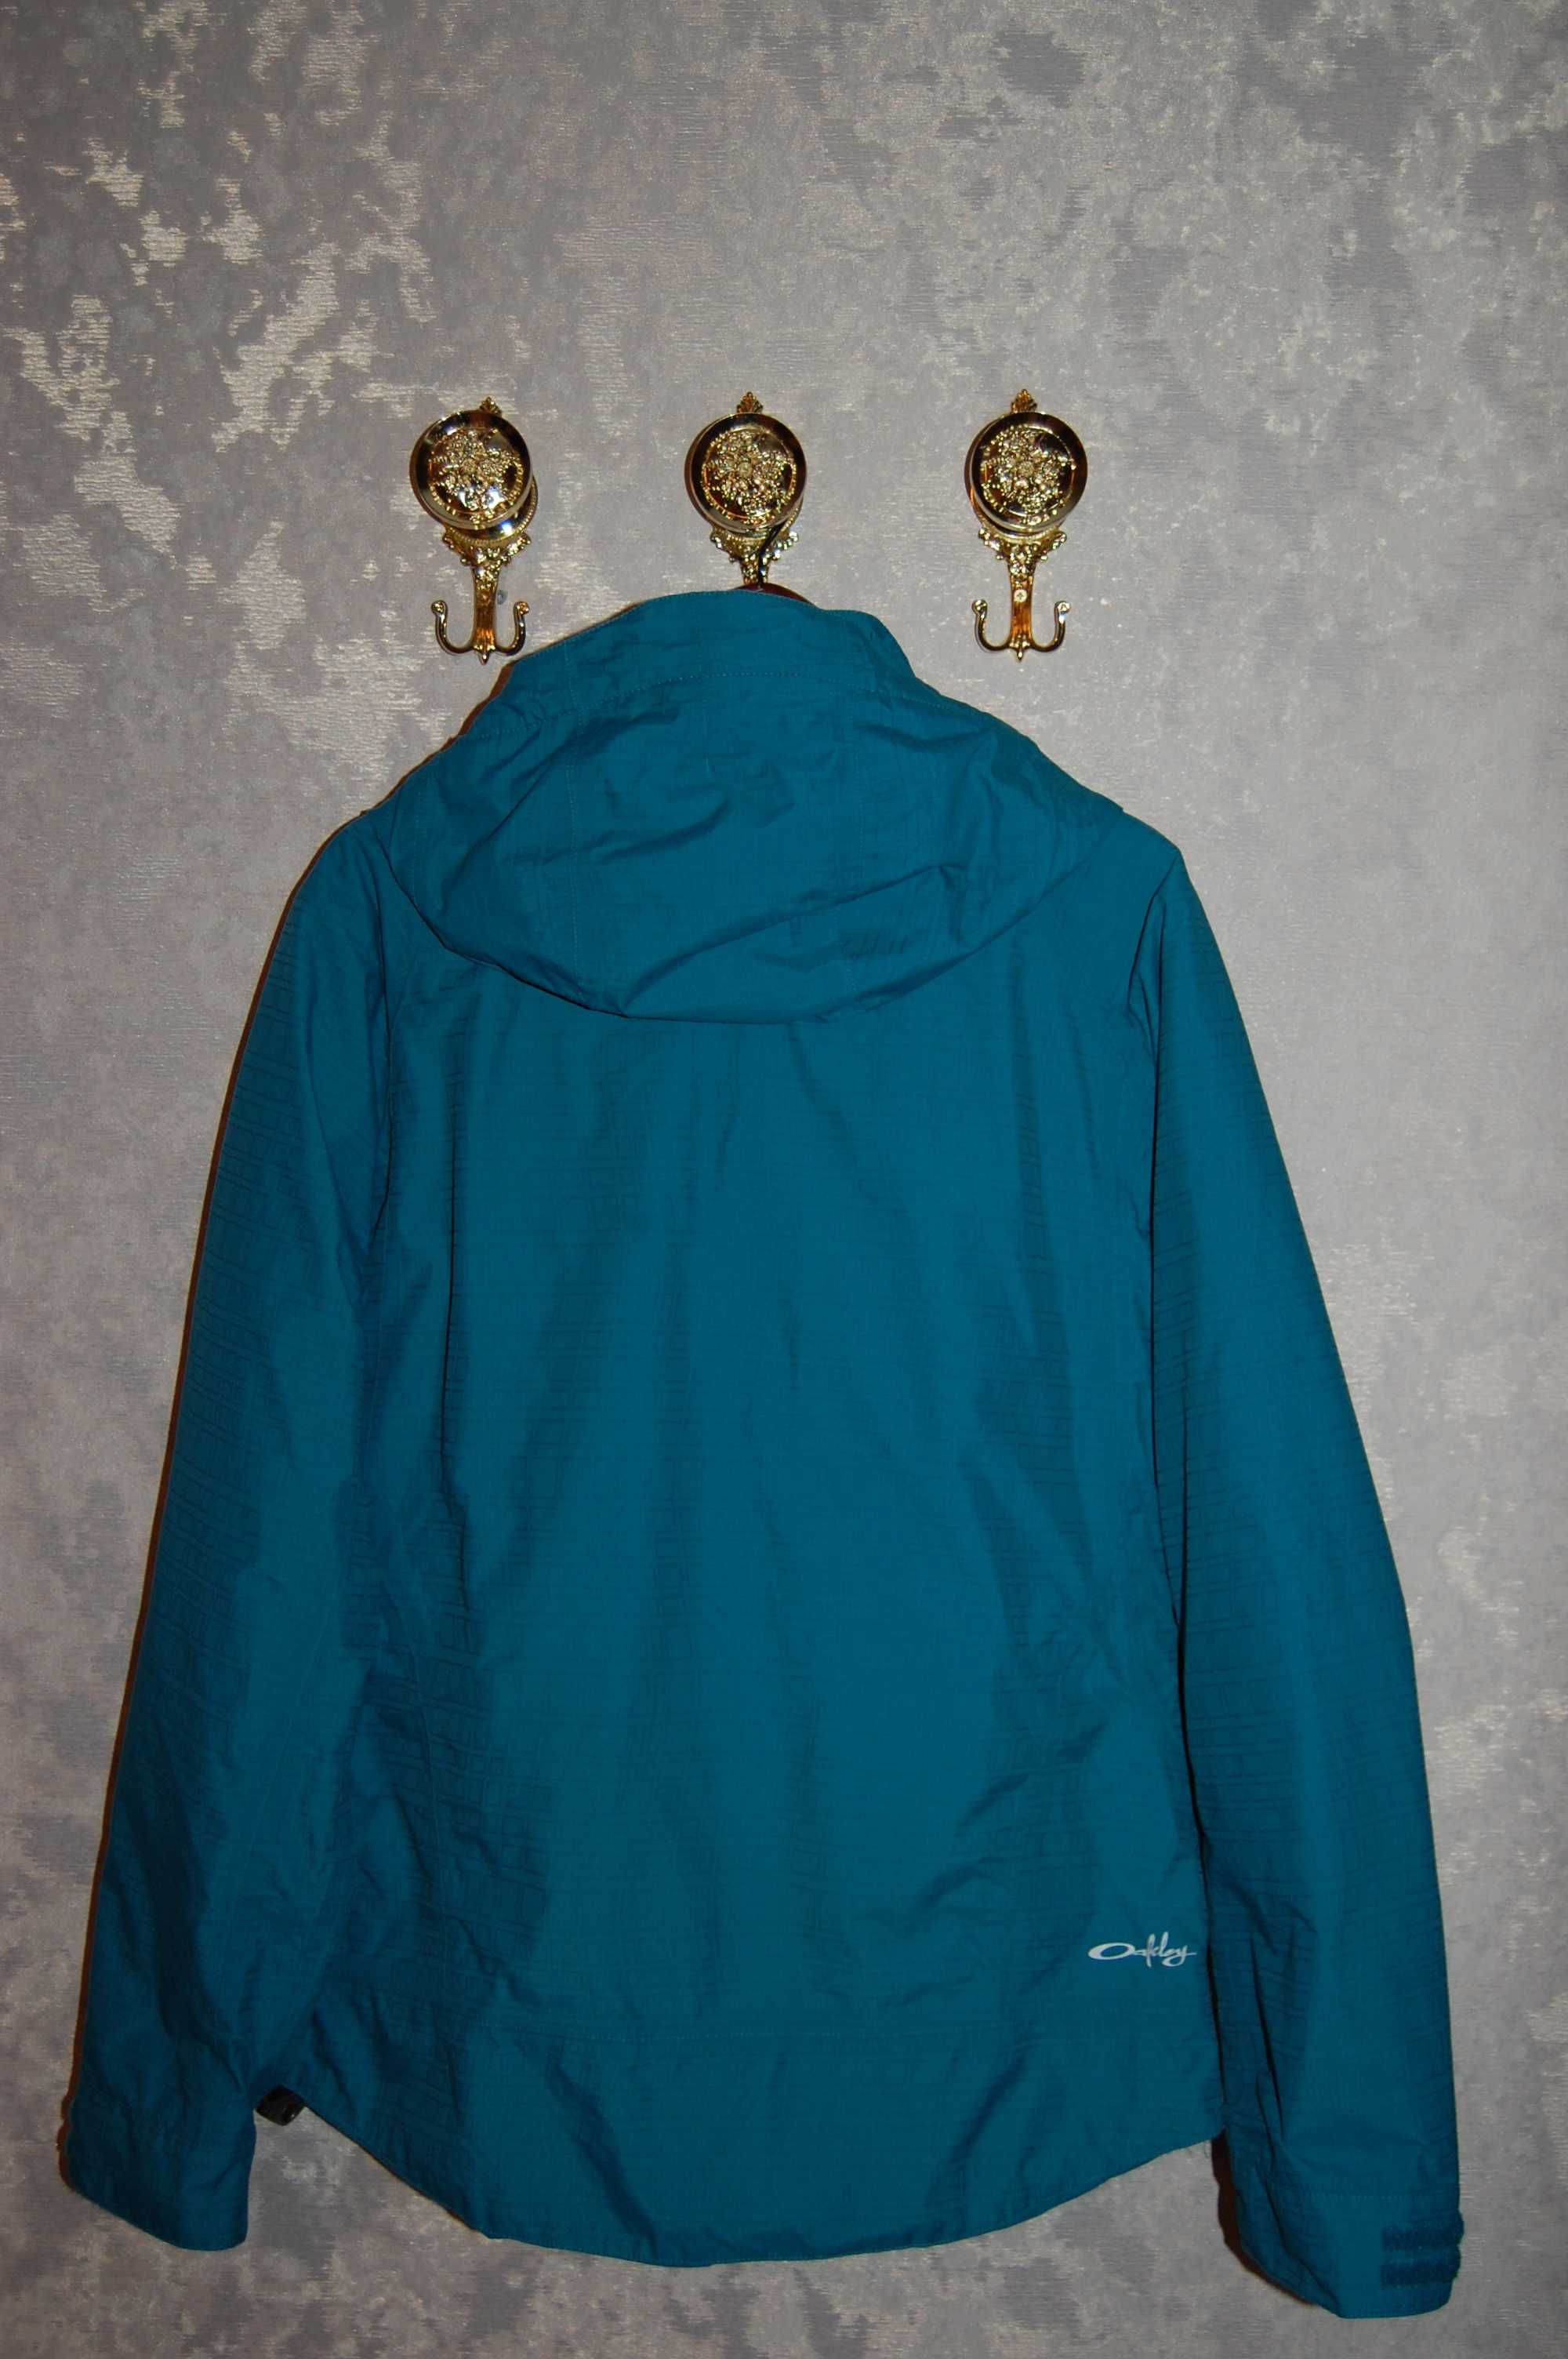 Файна жіноча лижна куртка OAKLEY , рідкісний оригінал, на 50 р-р